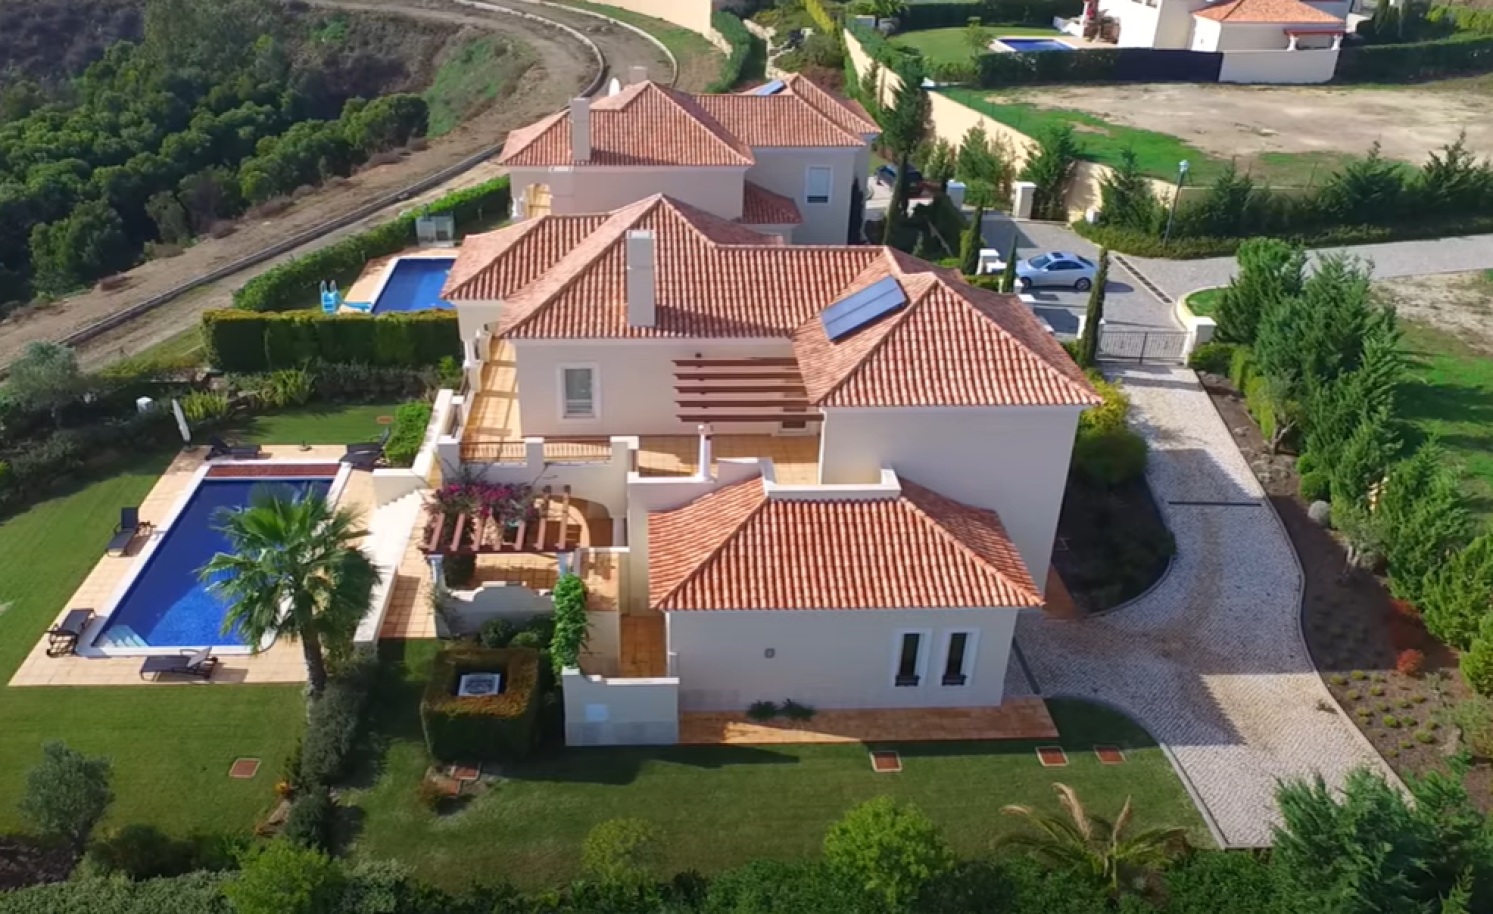 4 Bedroom Villa with pool for sale in Vila Real de Santo Antonio, Algarve_215716